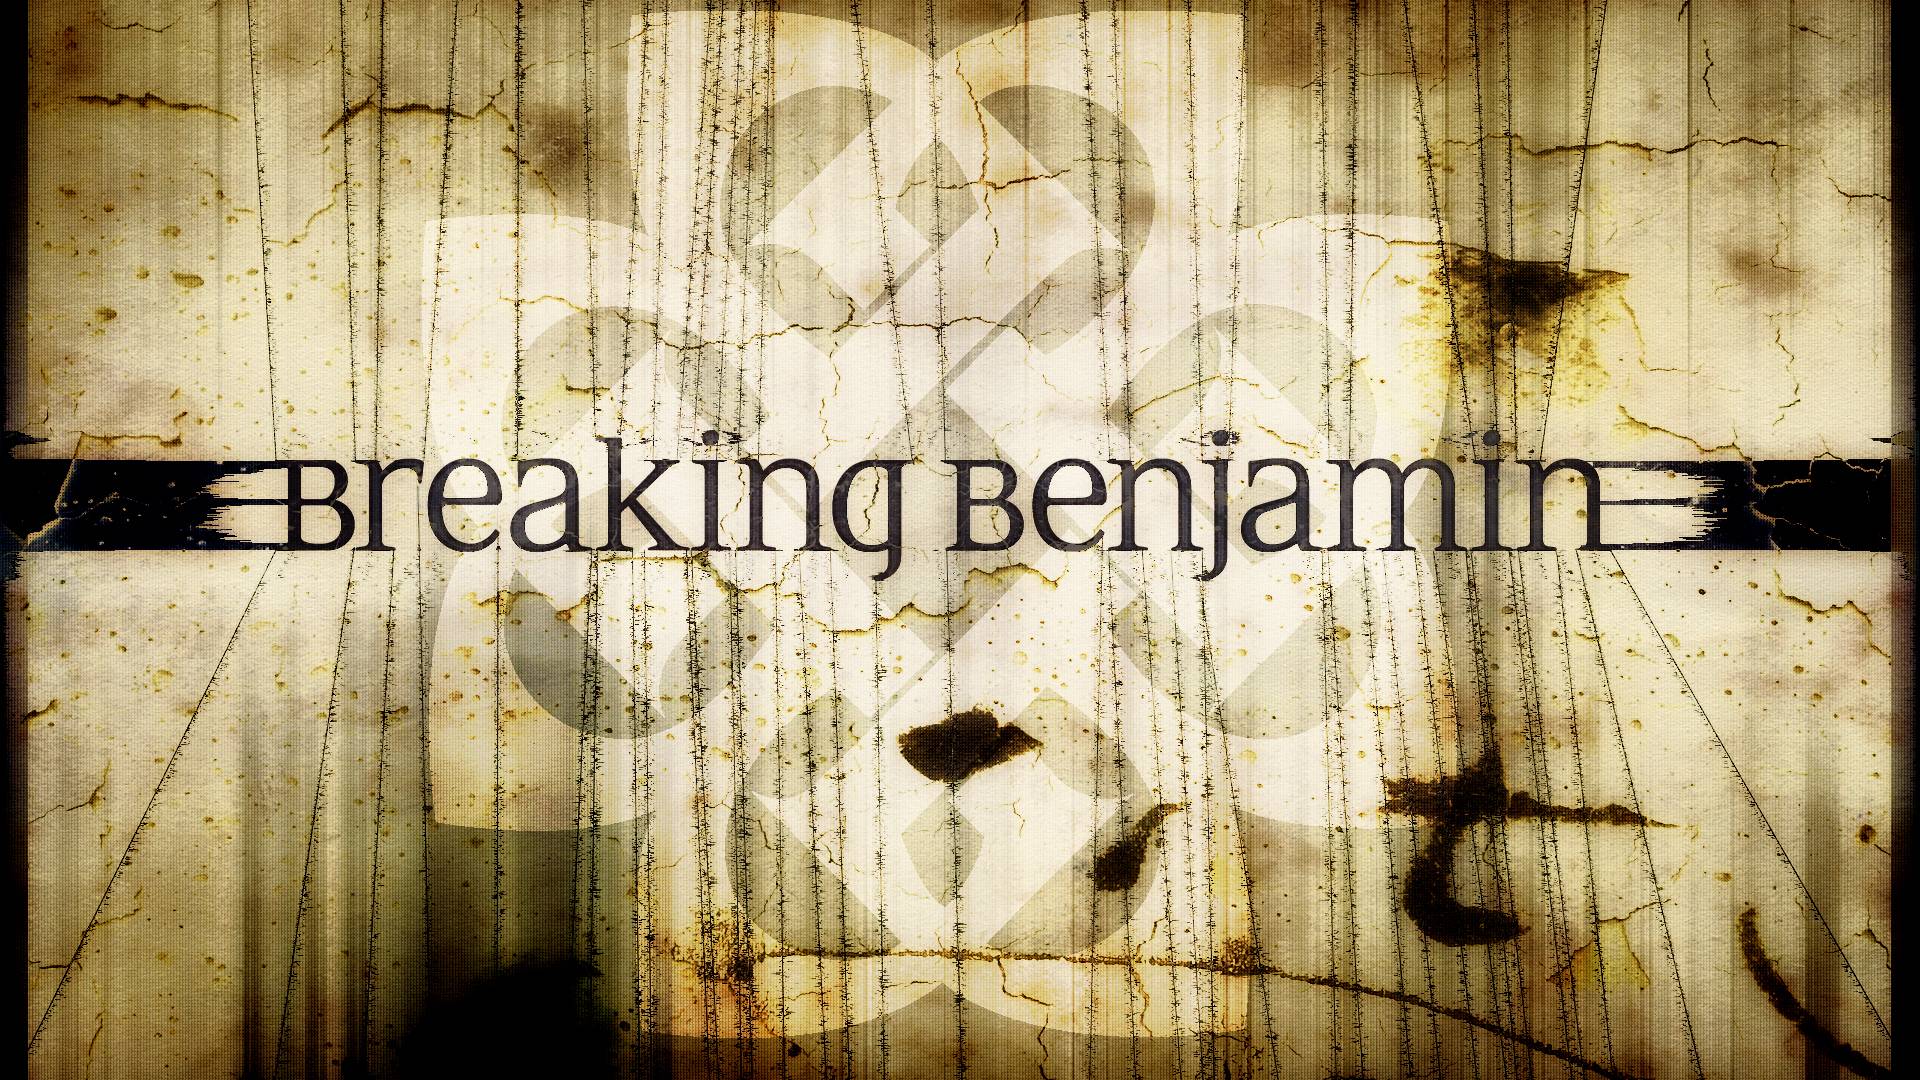 Breaking Benjamin Wallpaper. Groundbreaking Wallpaper, Breaking Bad Wallpaper and Breaking Friendship Wallpaper